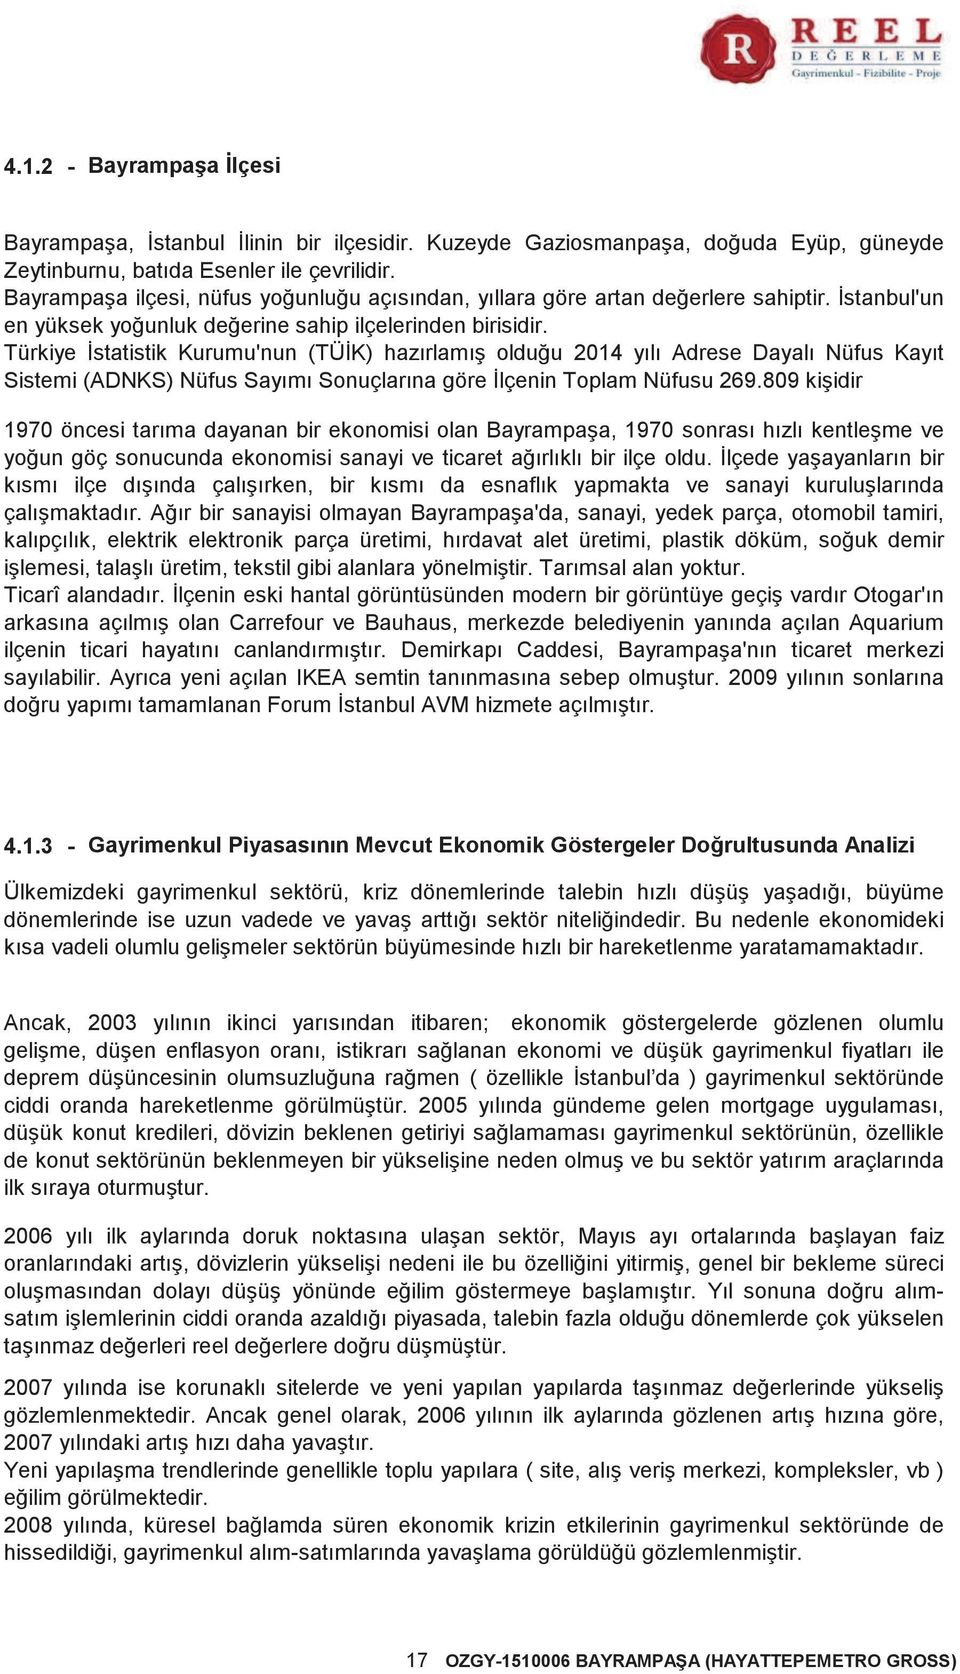 Türkiye İstatistik Kurumu'nun (TÜİK) hazırlamış olduğu 2014 yılı Adrese Dayalı Nüfus Kayıt Sistemi (ADNKS) Nüfus Sayımı Sonuçlarına göre İlçenin Toplam Nüfusu 269.